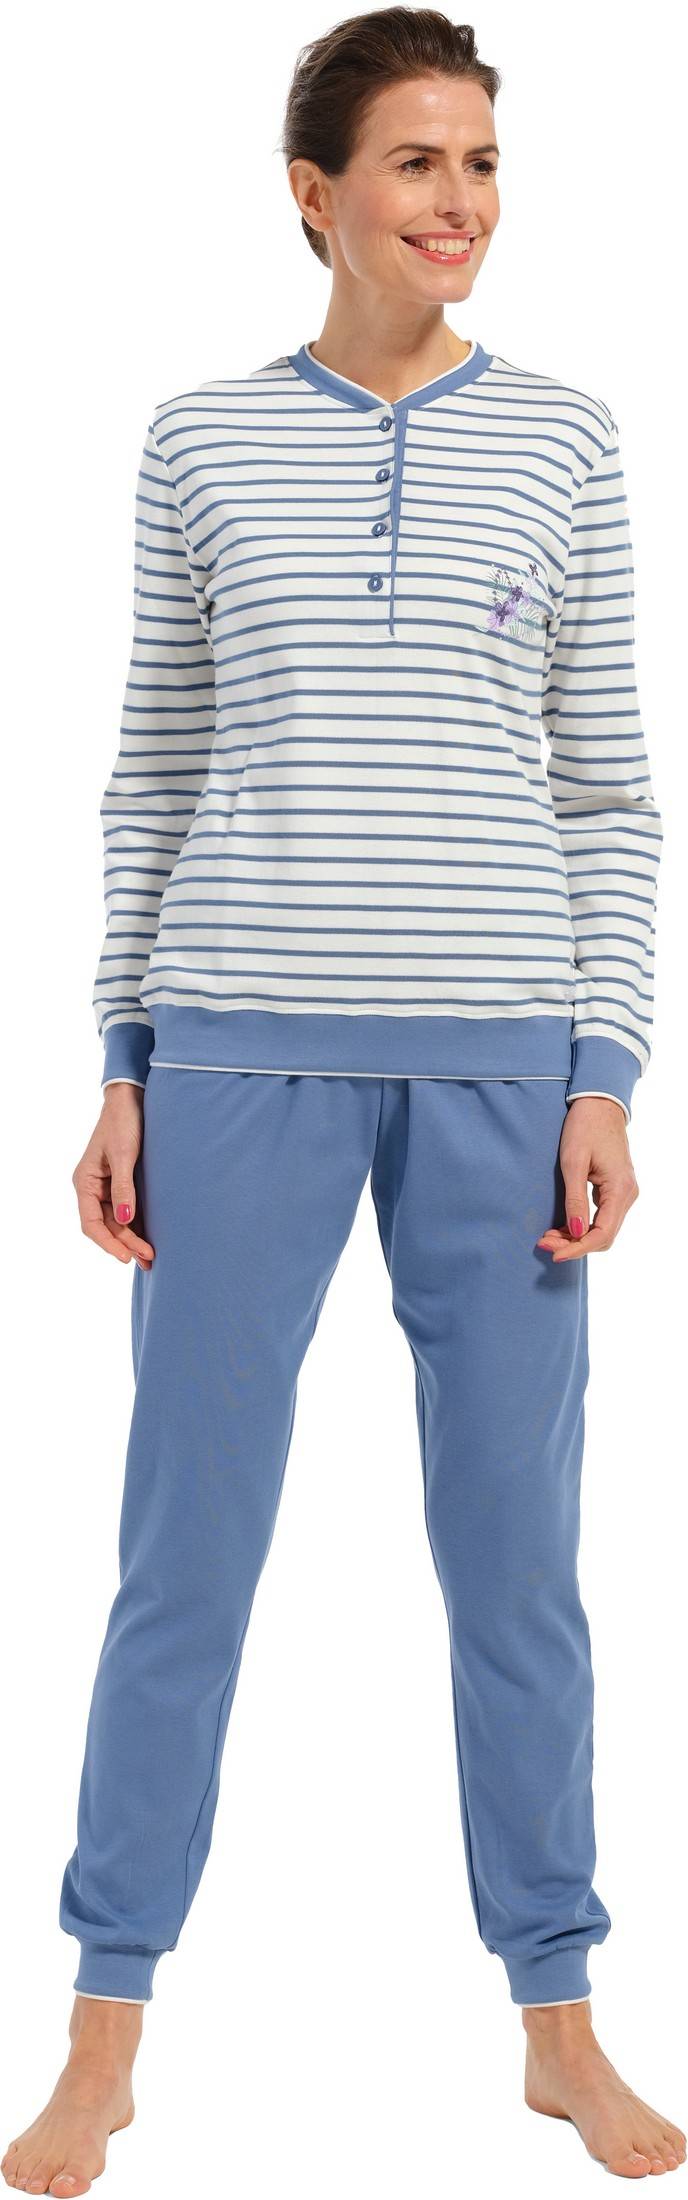 Pyjama manches longues Rennes Pastunette 202321724